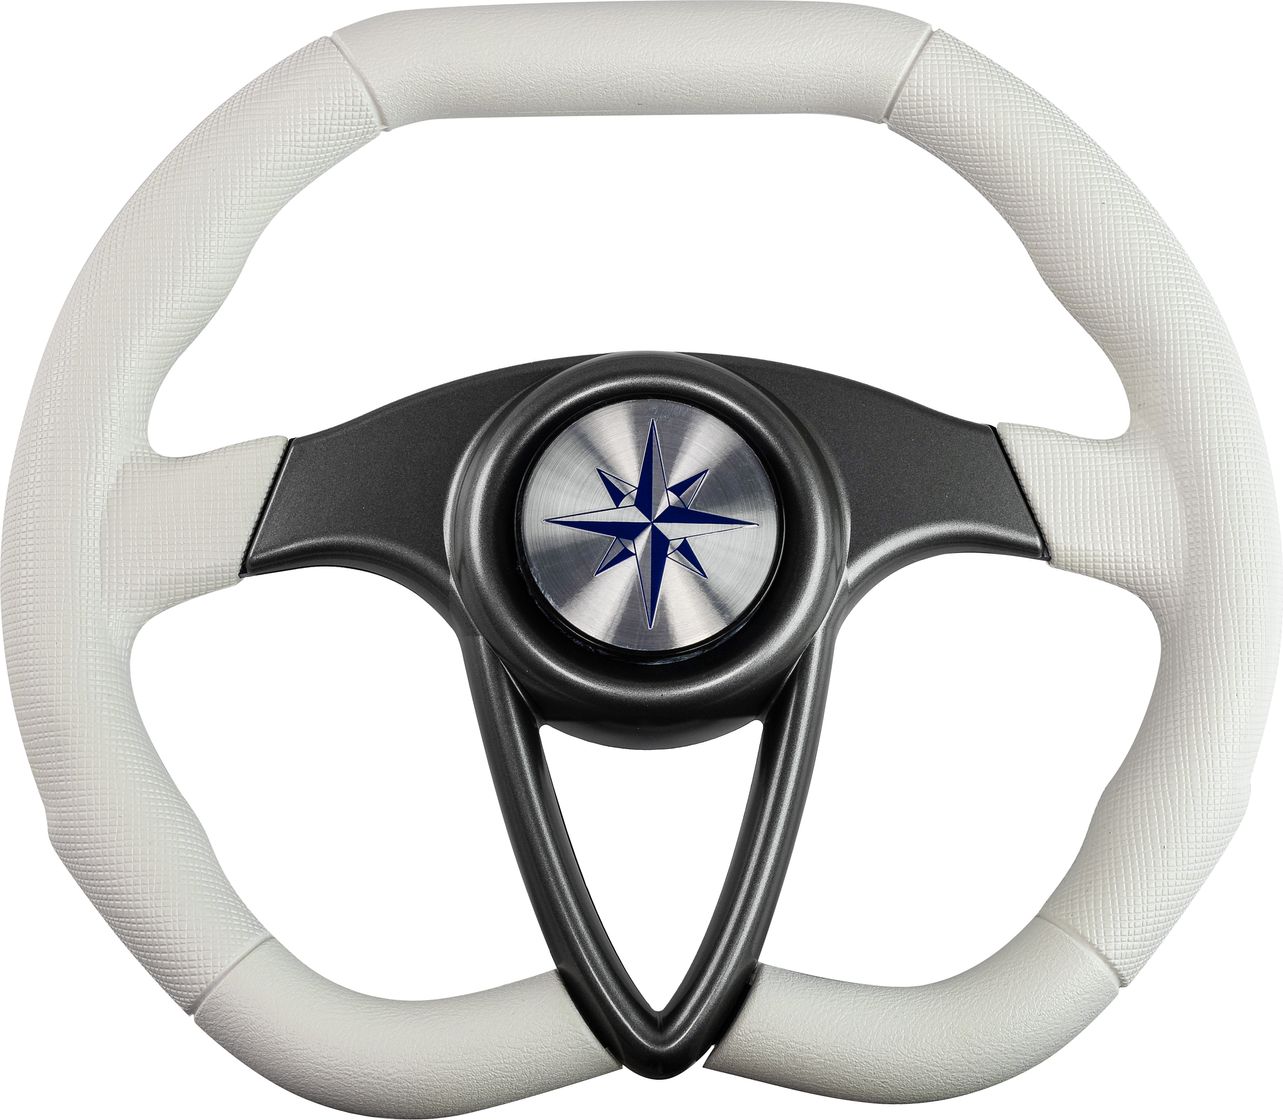 Рулевое колесо BARRACUDA обод белый, спицы серебряные д. 350 мм VN135002-08 рулевое колесо riva rsl обод белый спицы серебряные д 360 мм vn735022 08